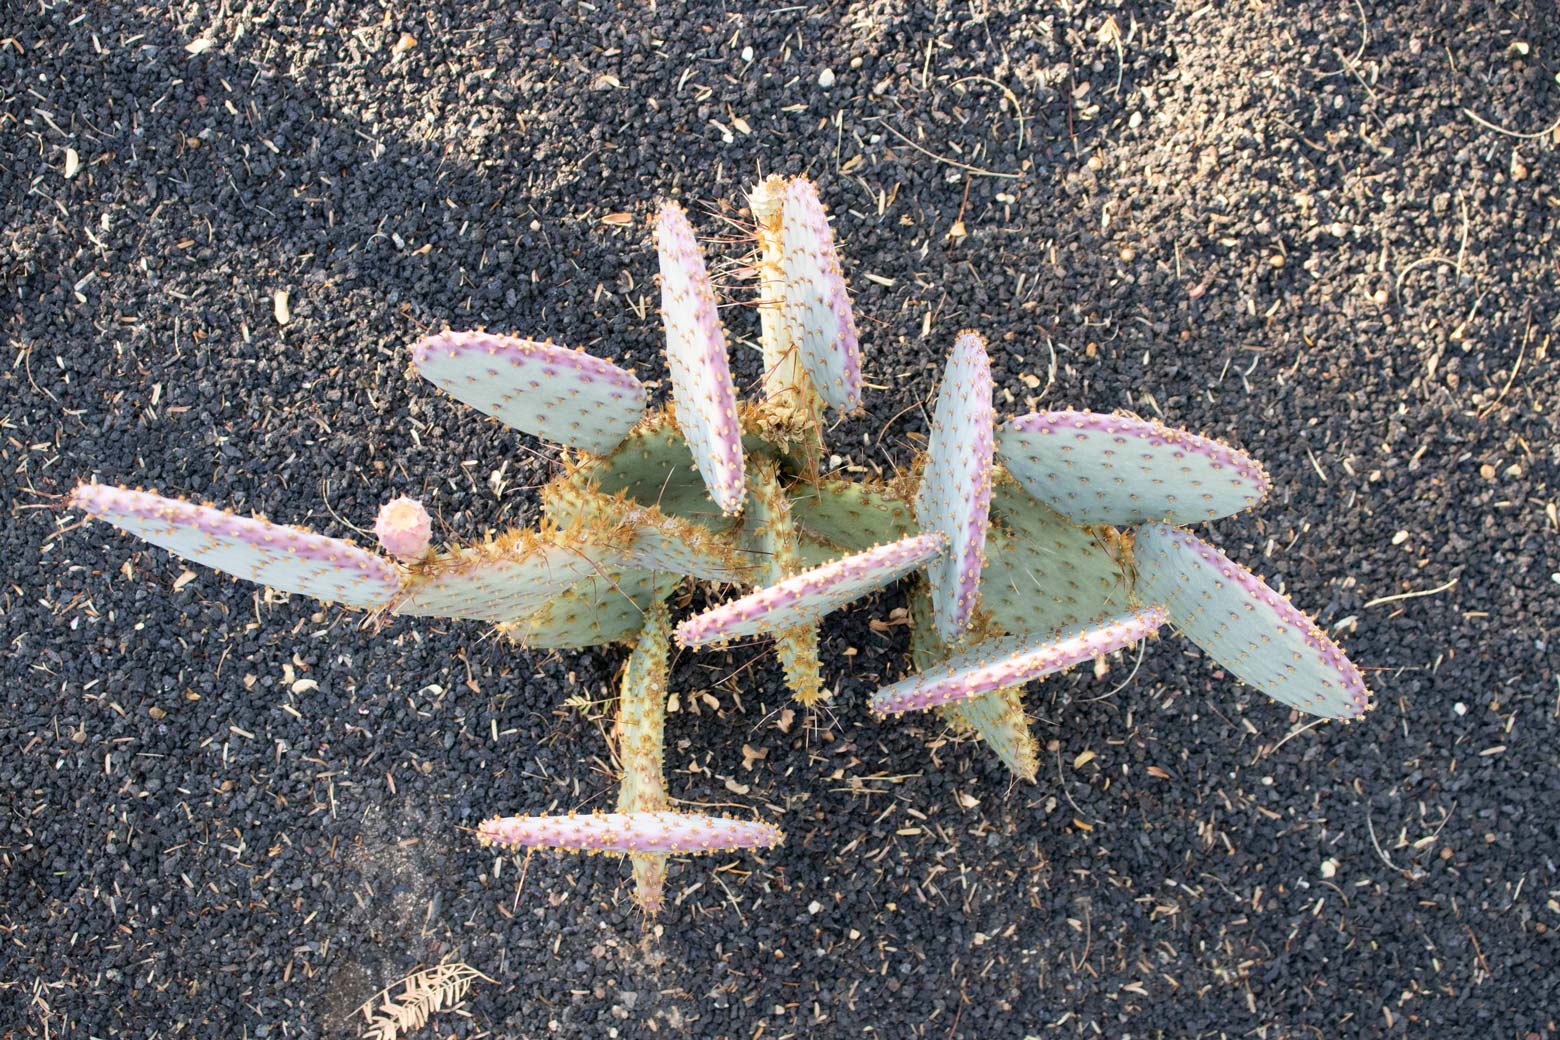 A Santa Rita cactus in the specimen bed.